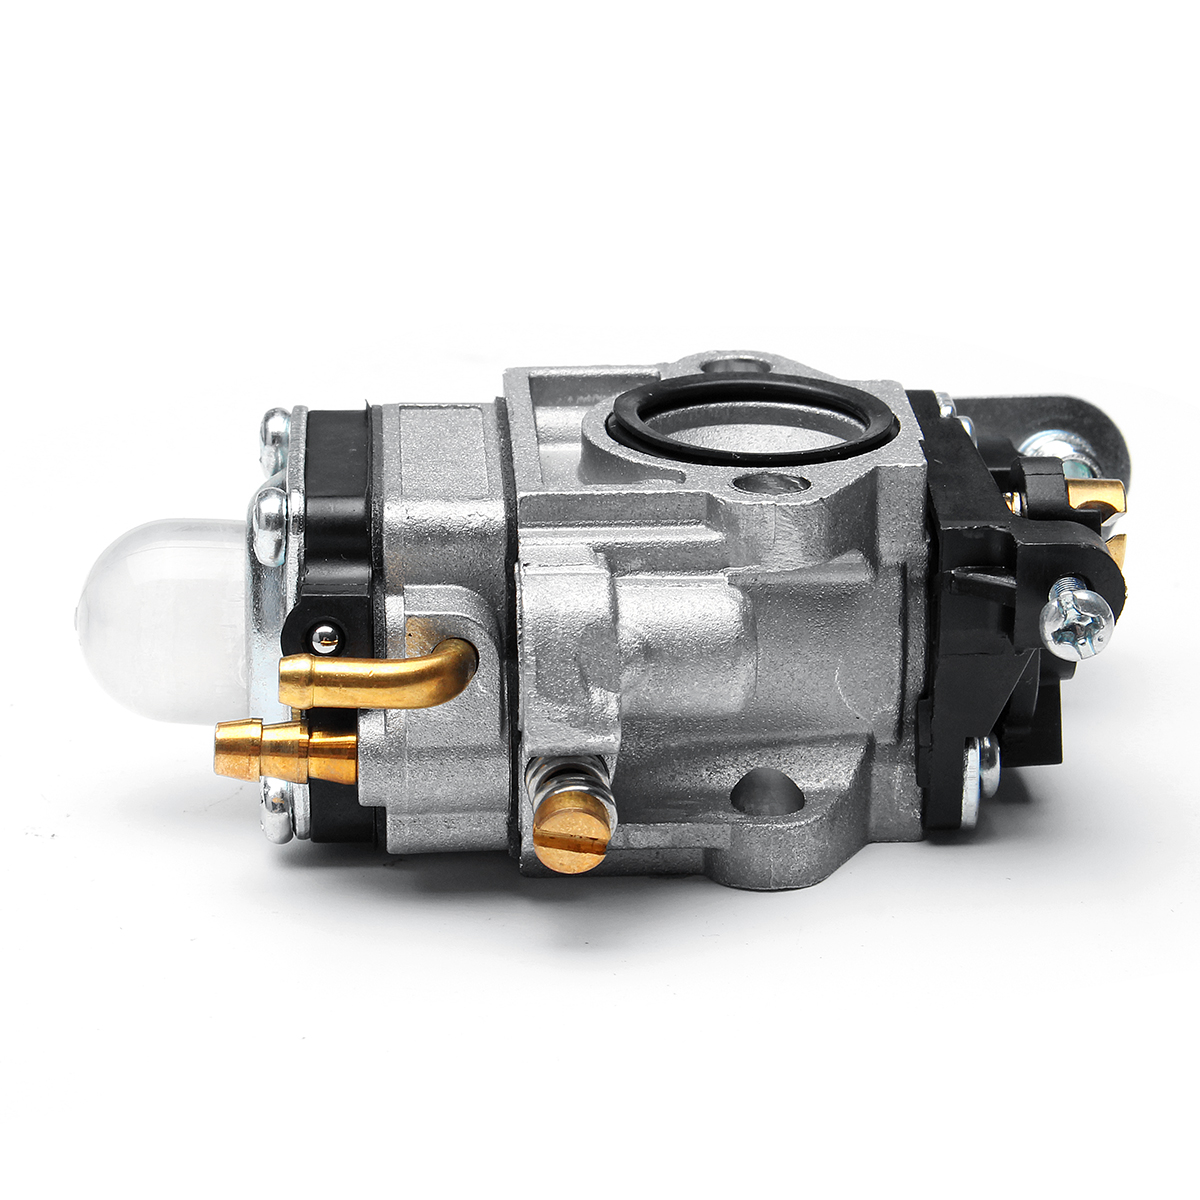 10Mm Trimmer Carburetor for Echo SRM 260S 261S Lawn Carb W/ Gasket #BC4401DW - Auto GoShop